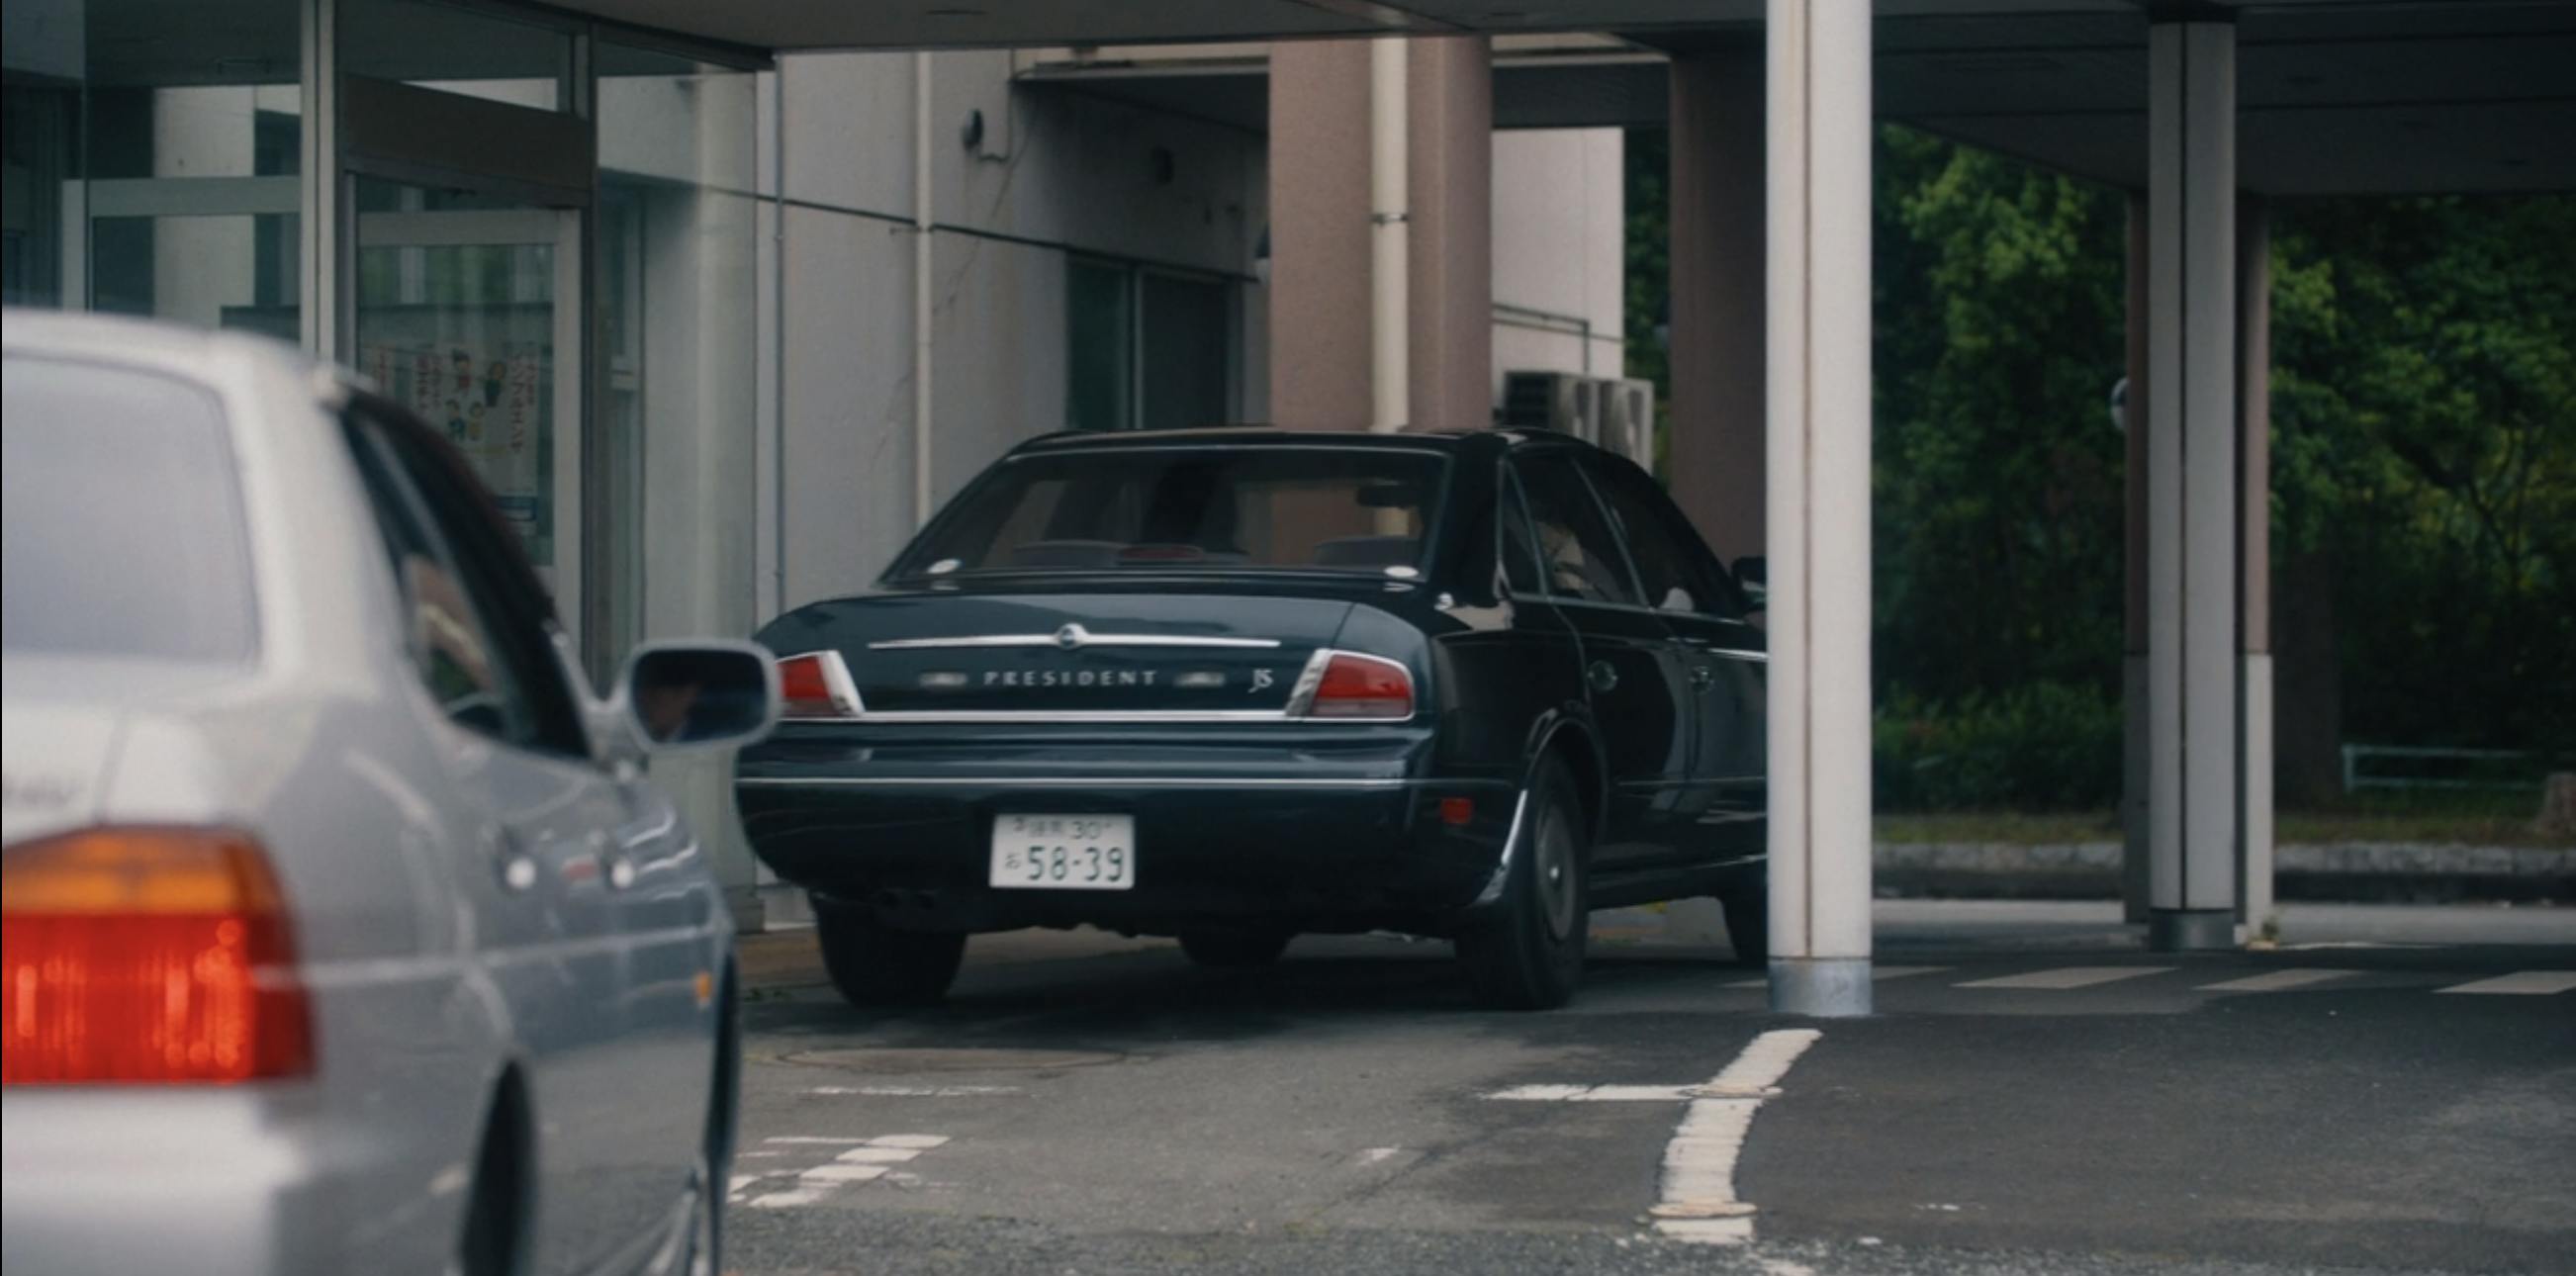 Tokyo Vice Datsun Nissan President rear